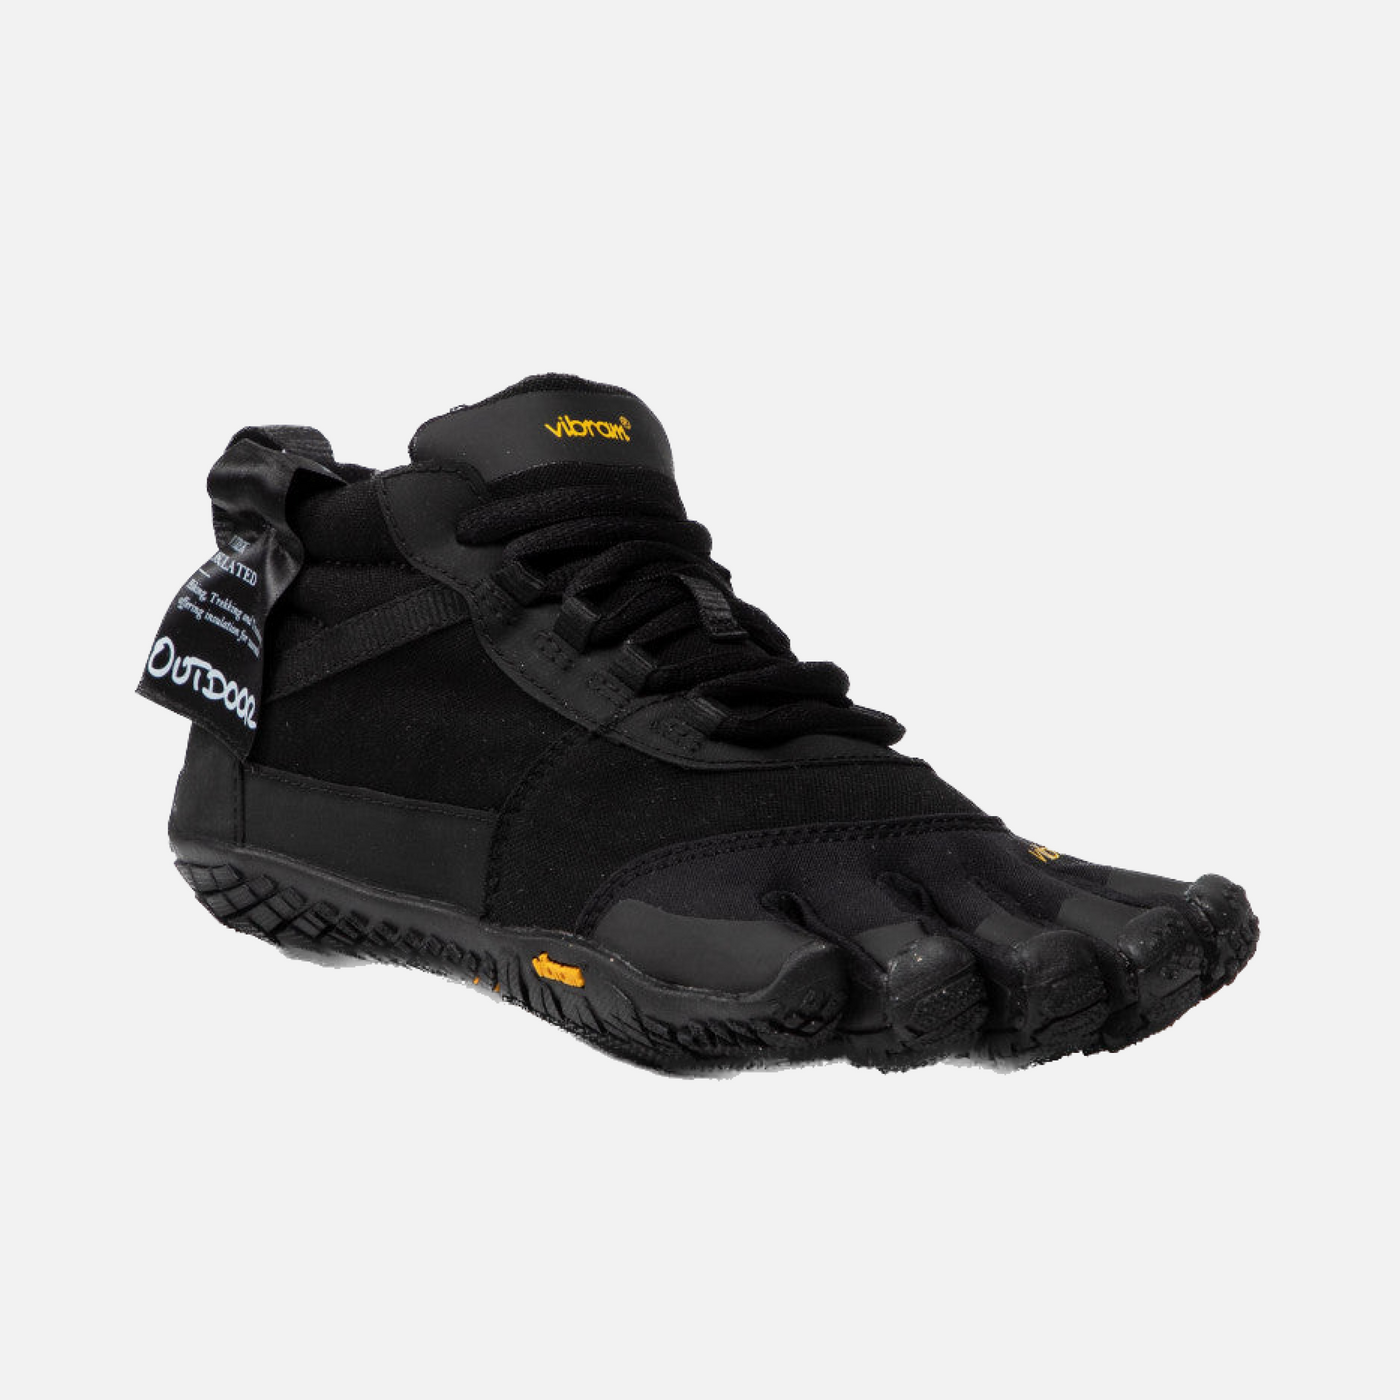 Vibram V-trek Insulated Men's shoes - Black